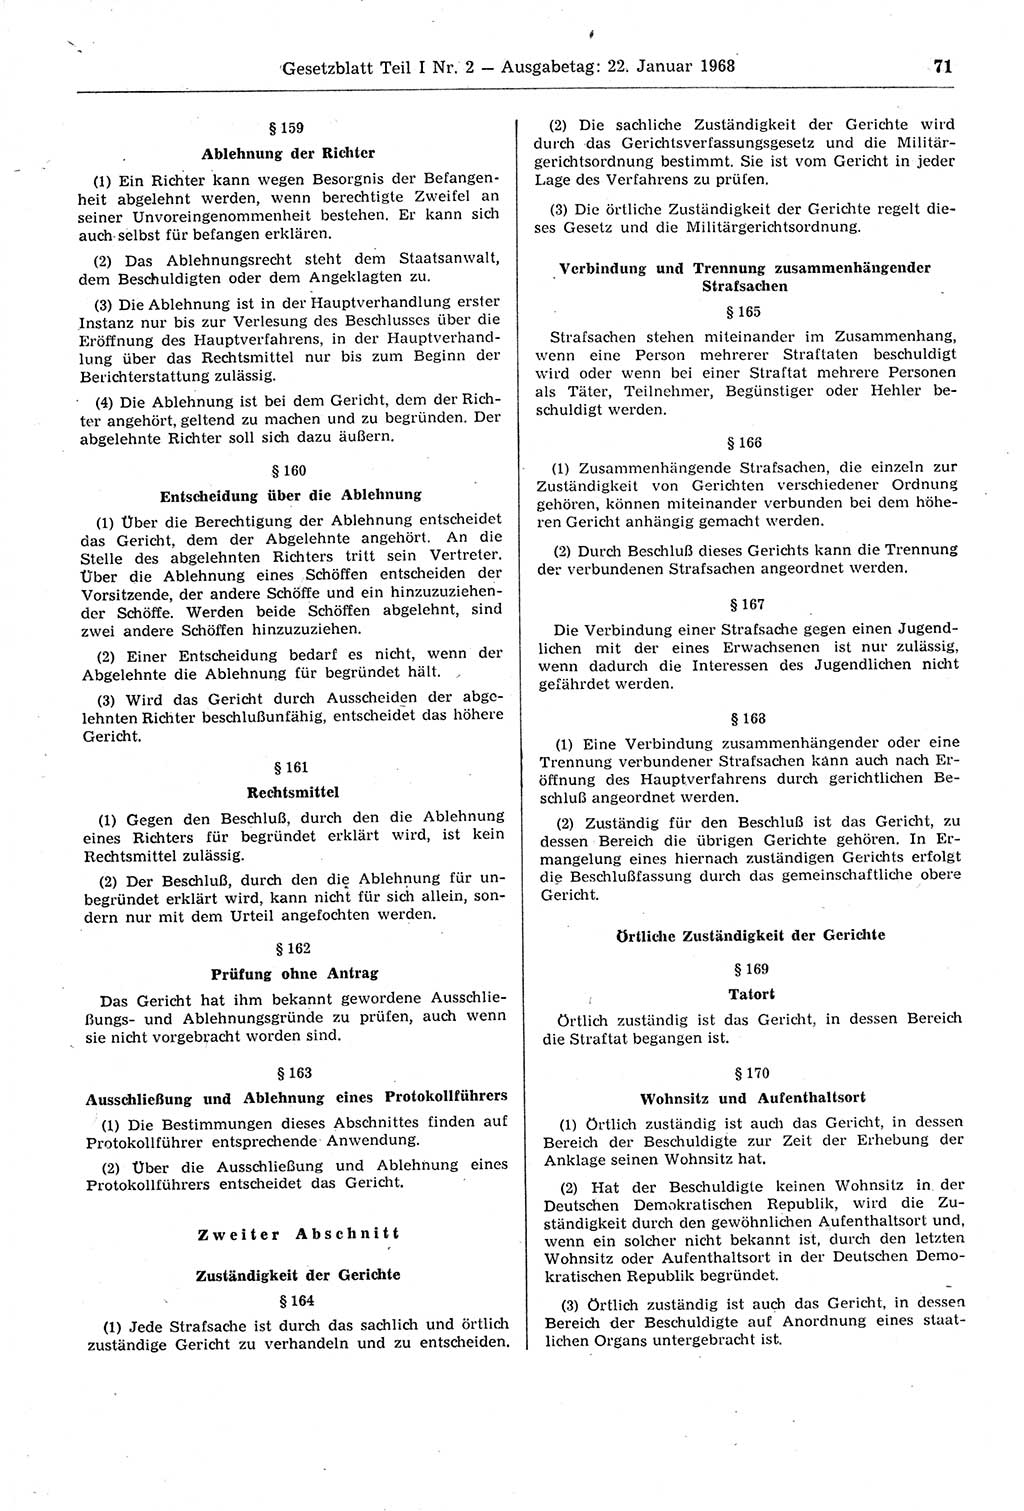 Gesetzblatt (GBl.) der Deutschen Demokratischen Republik (DDR) Teil Ⅰ 1968, Seite 71 (GBl. DDR Ⅰ 1968, S. 71)